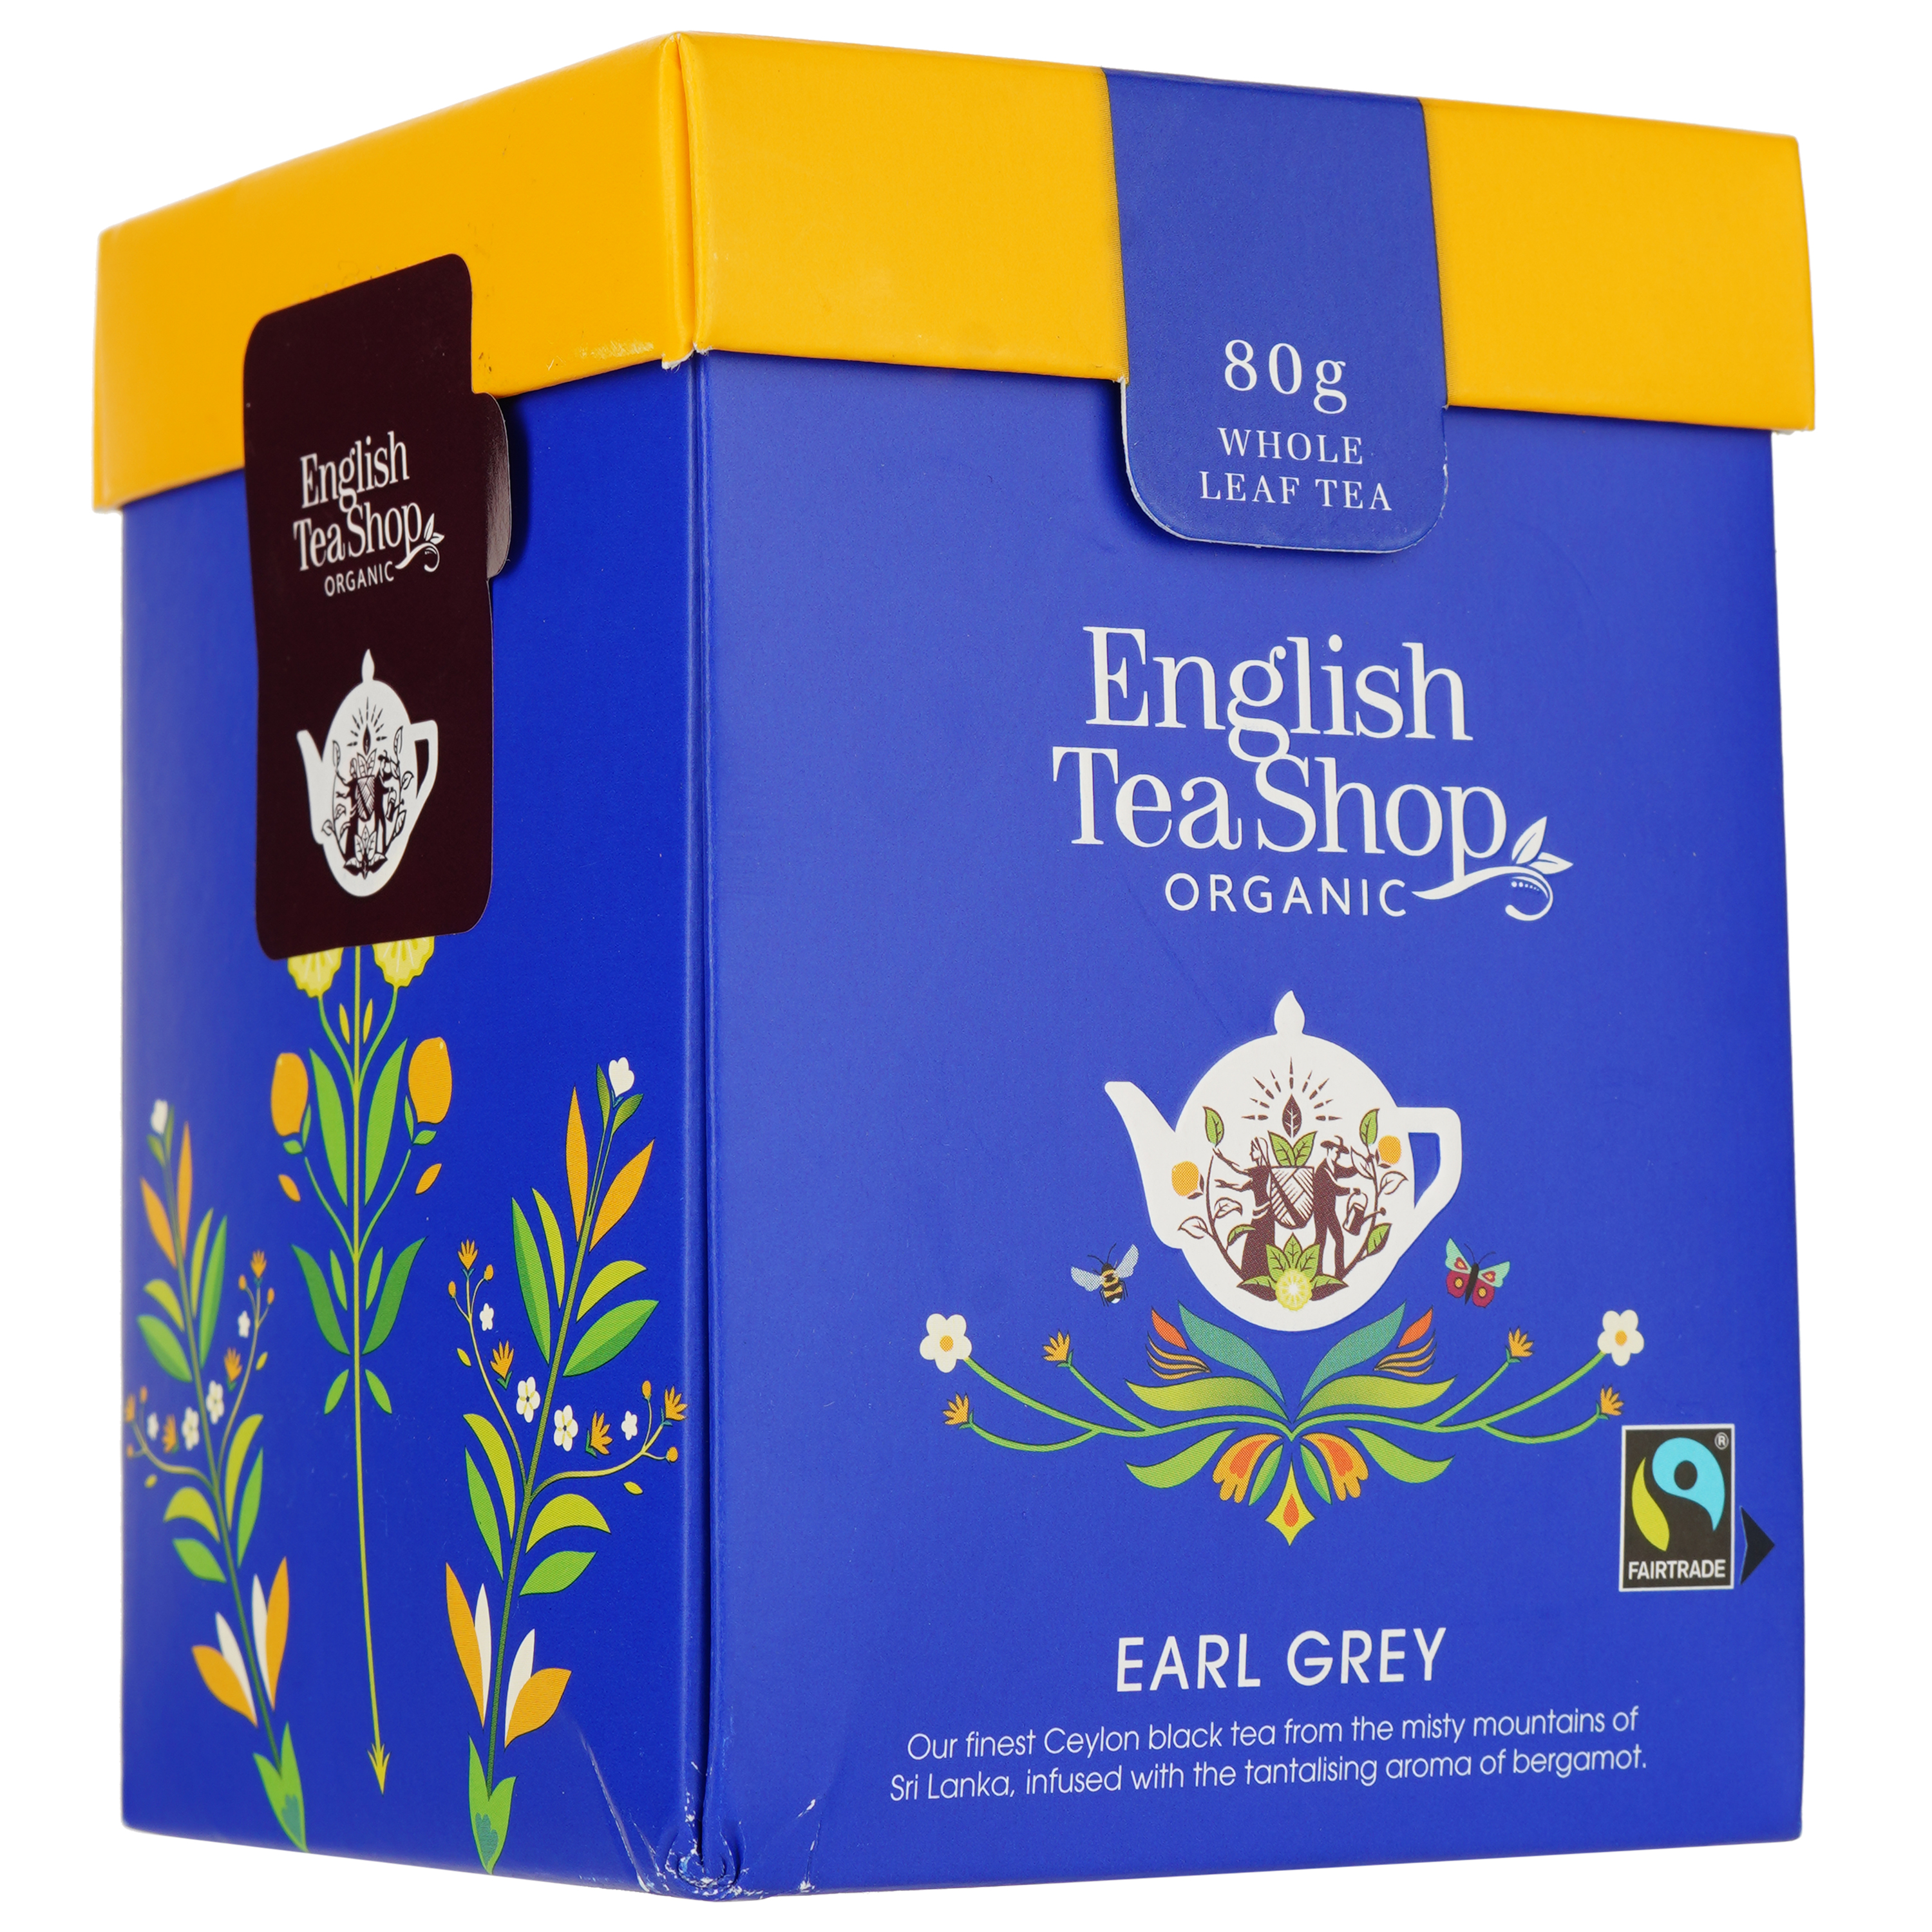 Чай черный English Tea Shop Earl Grey, 80г (818891) - фото 2